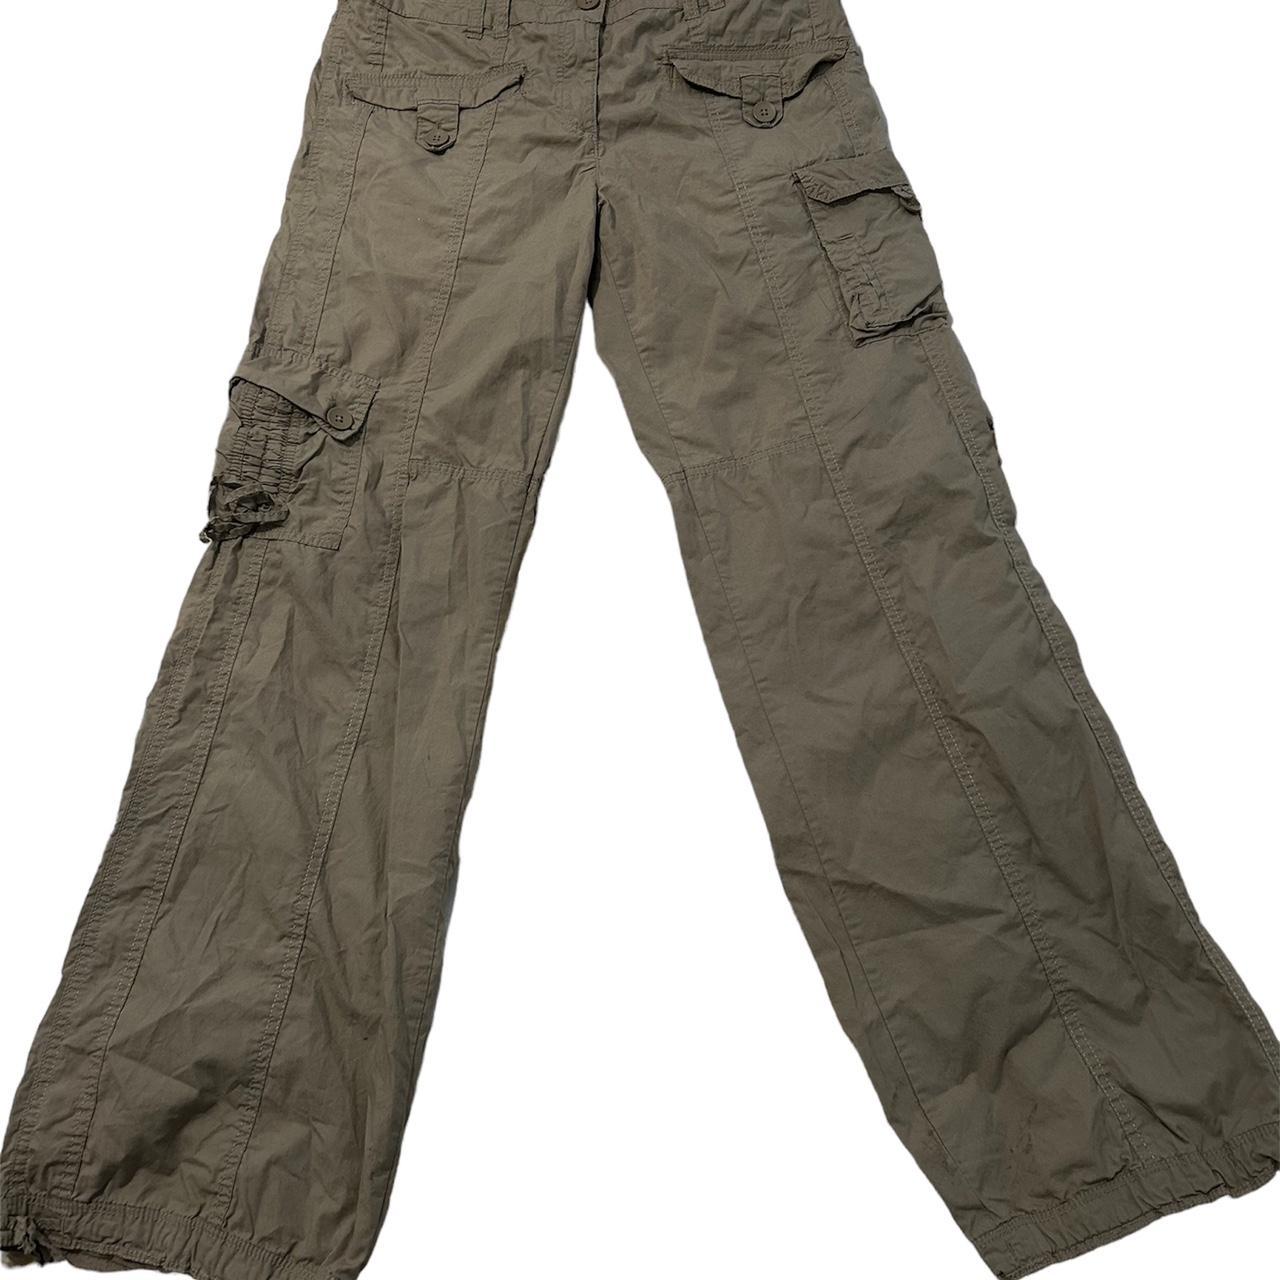 Vintage cargo trousers Beige colour Size 12 , I’m a... - Depop